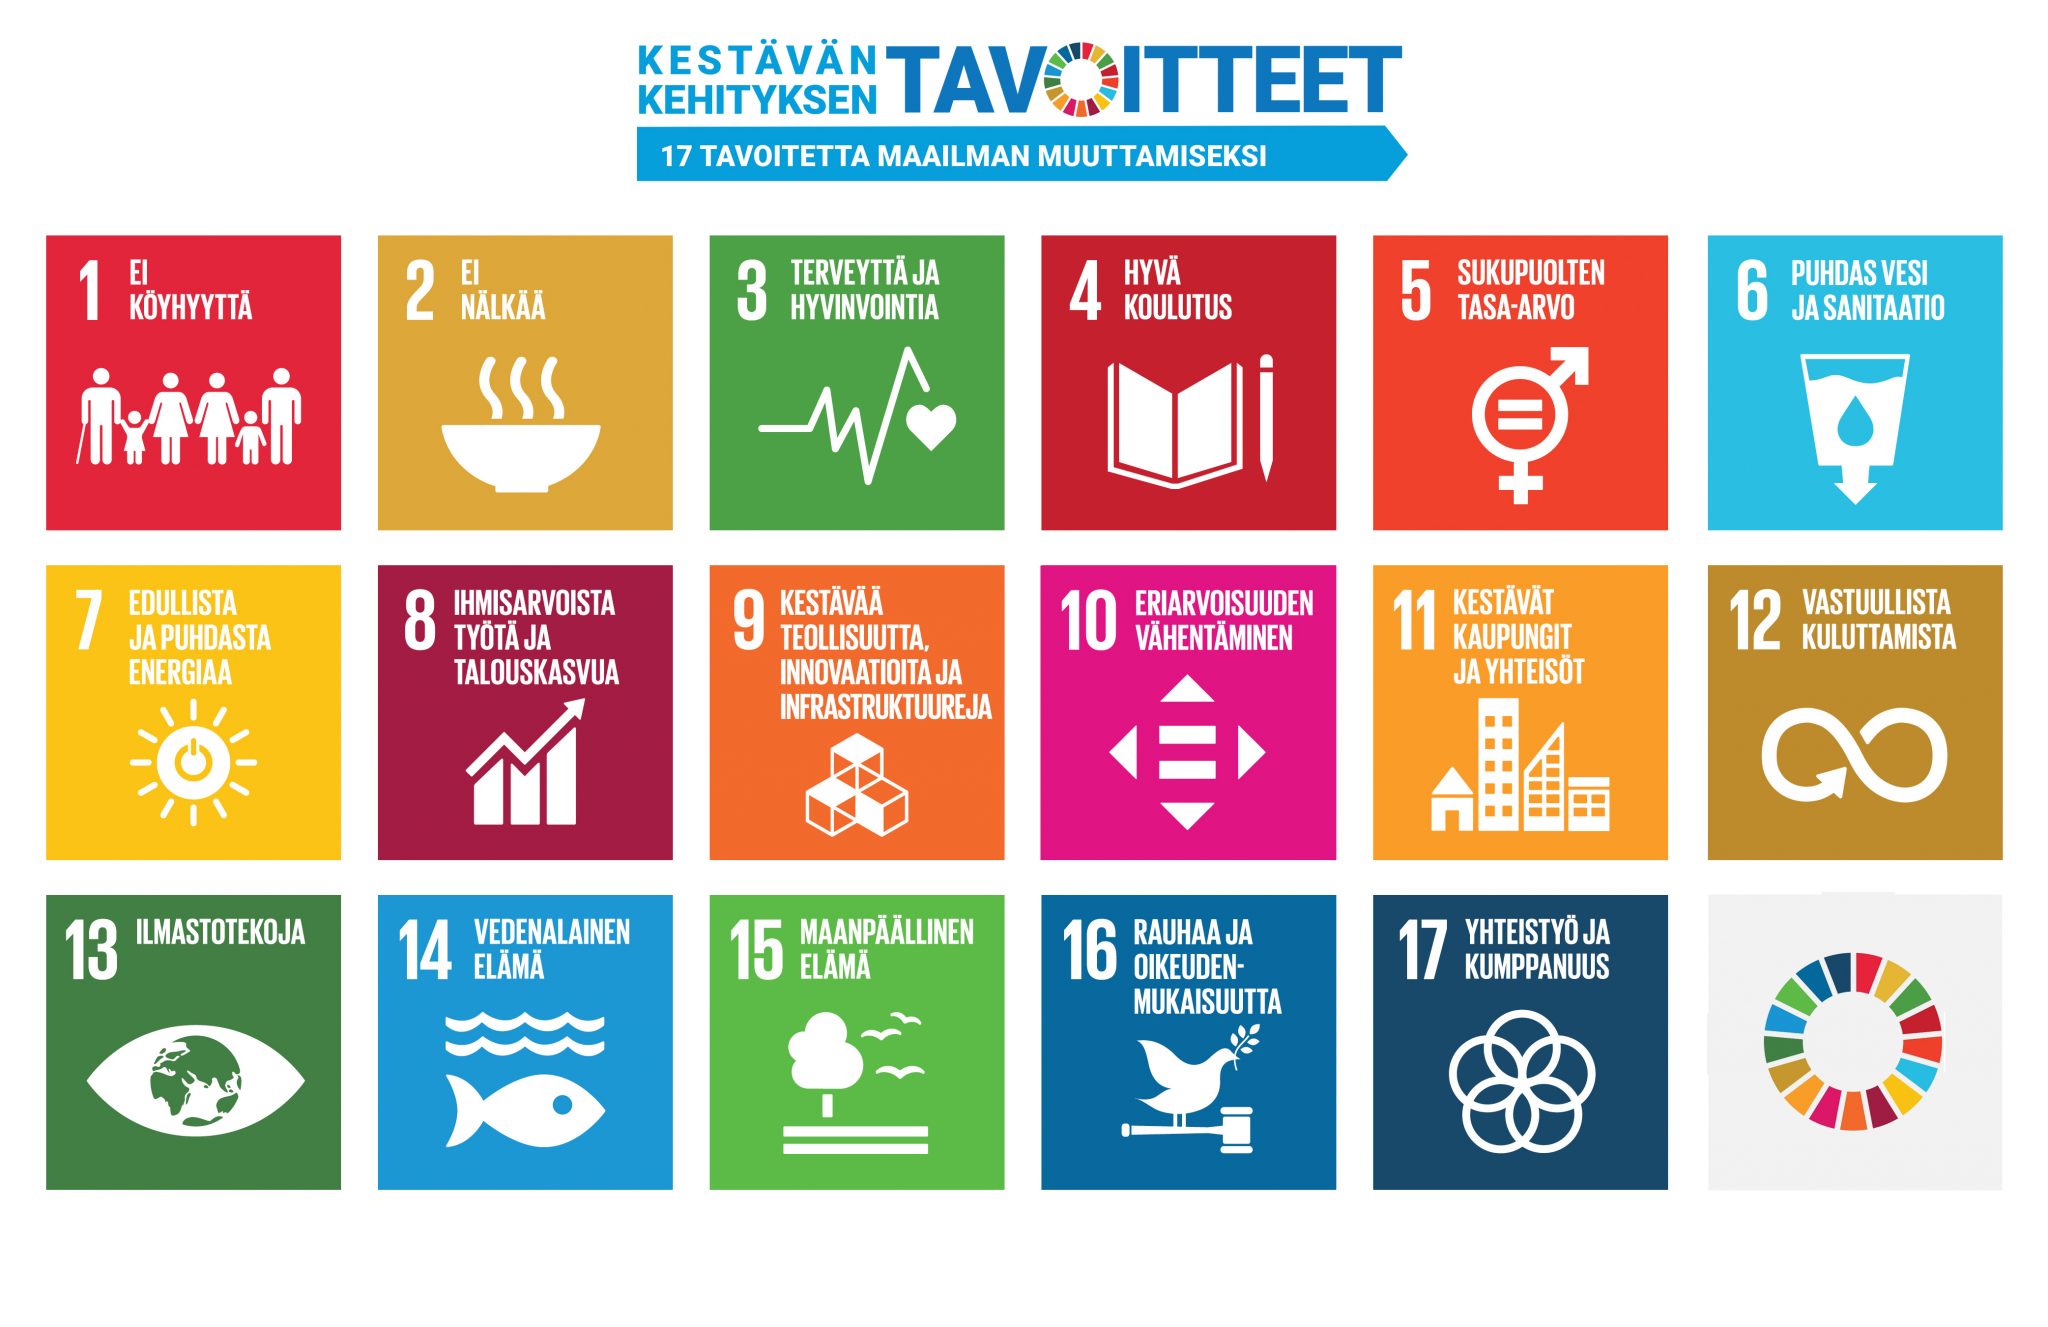 Kestävän kehityksen 17 tavoitetta maailman muuttamiseksi. YK:n kestävän kehityksen tavoiteohjelma Agenda 2030 tähtää äärimmäisen köyhyyden poistamiseen sekä kestävään kehitykseen, jossa otetaan ympäristö, talous ja ihminen tasavertaisesti huomioon. 